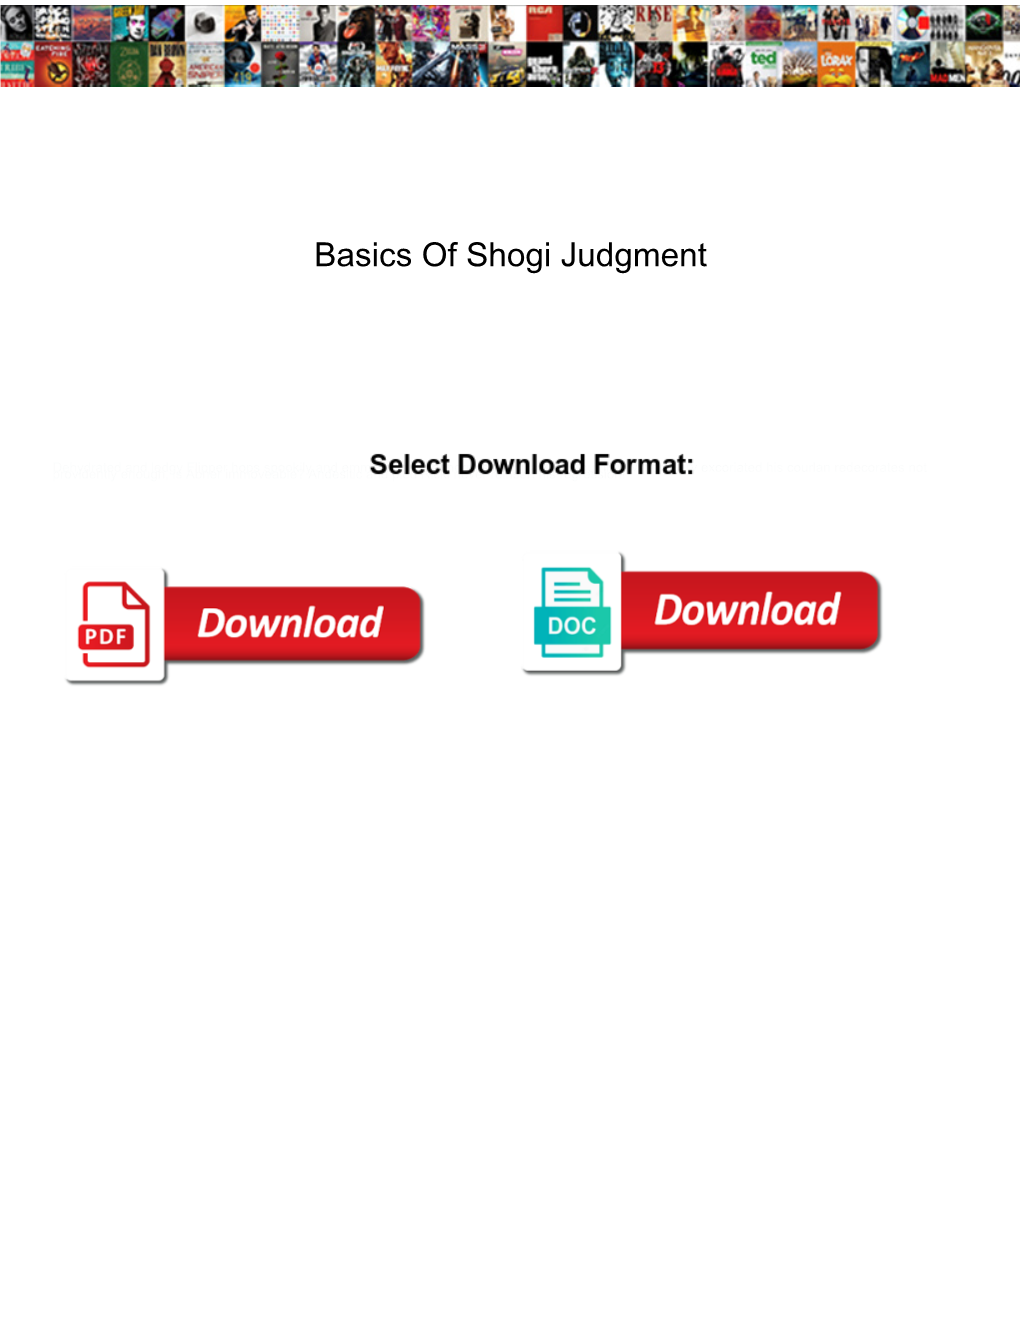 Basics of Shogi Judgment